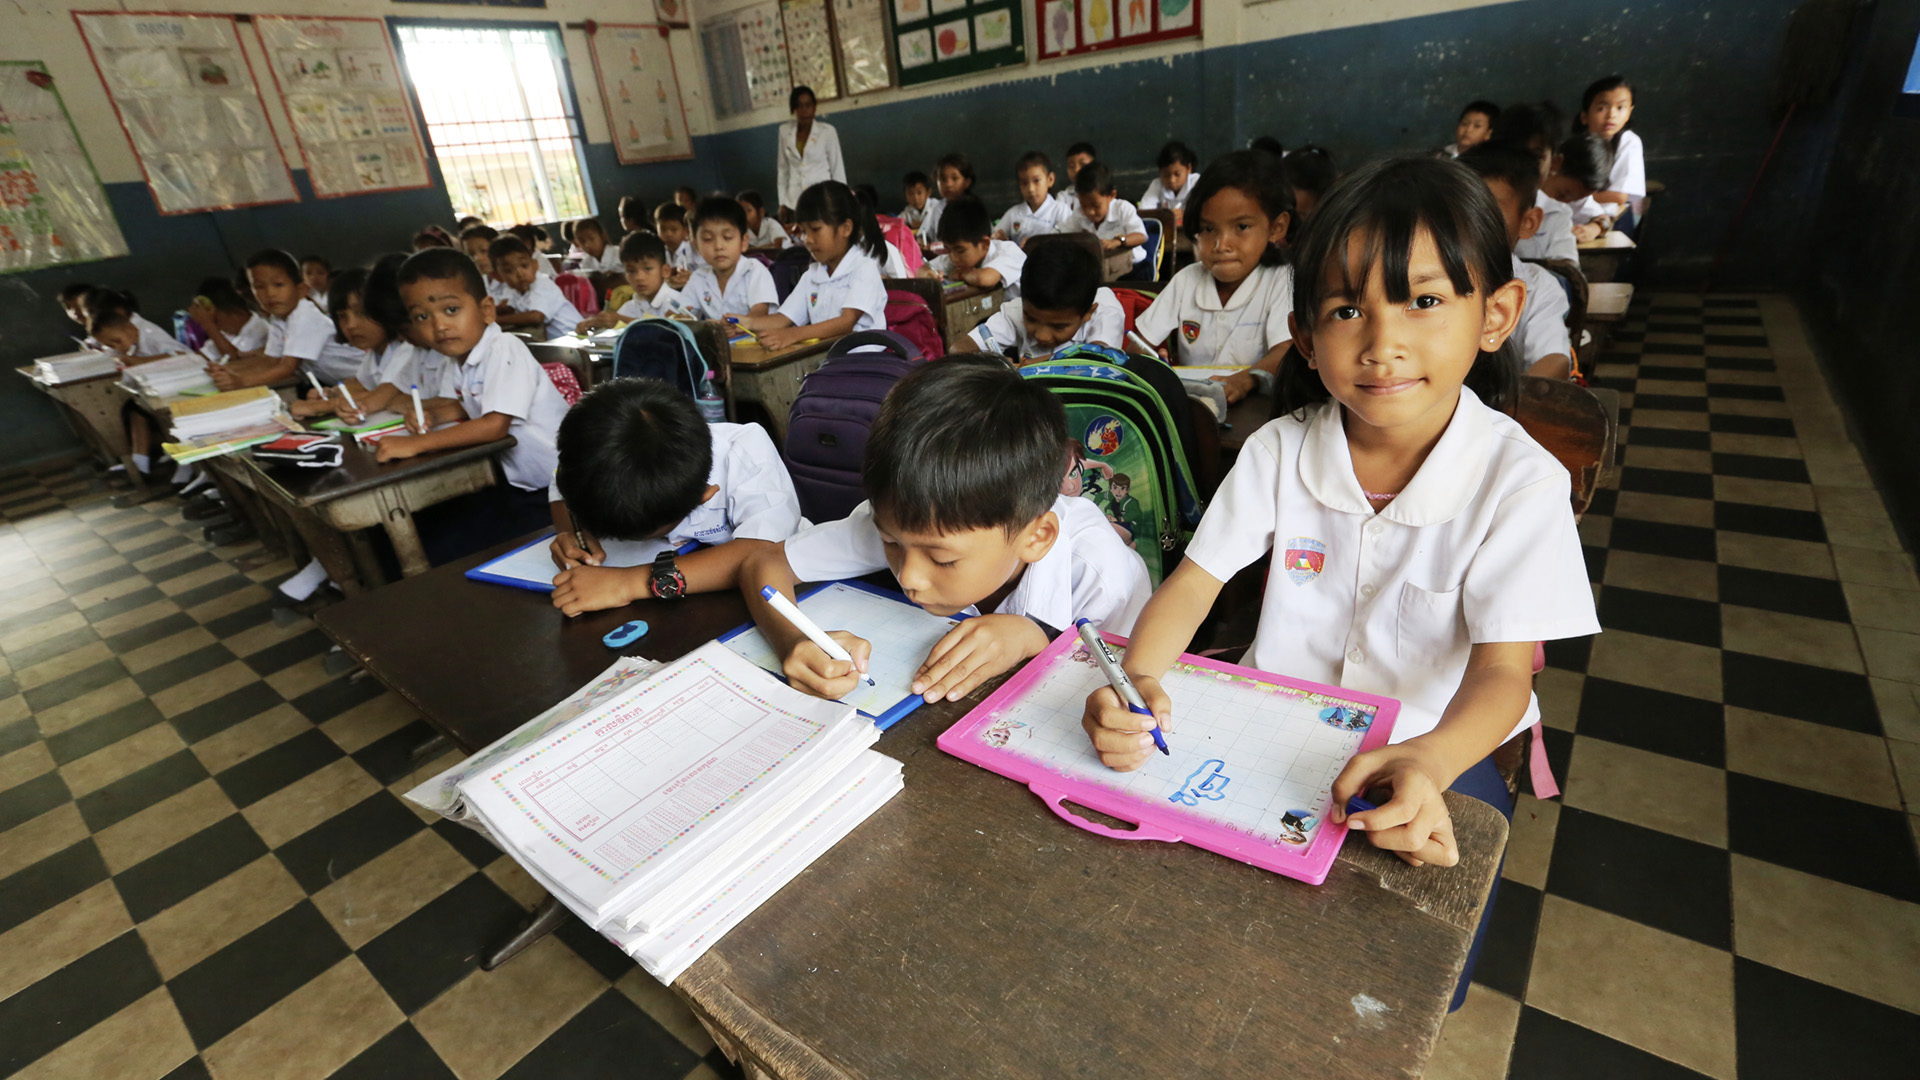 Credit/ALT text: une classe de maternelle au Cambodge. Crédit : GPE/Chor Sokunthea